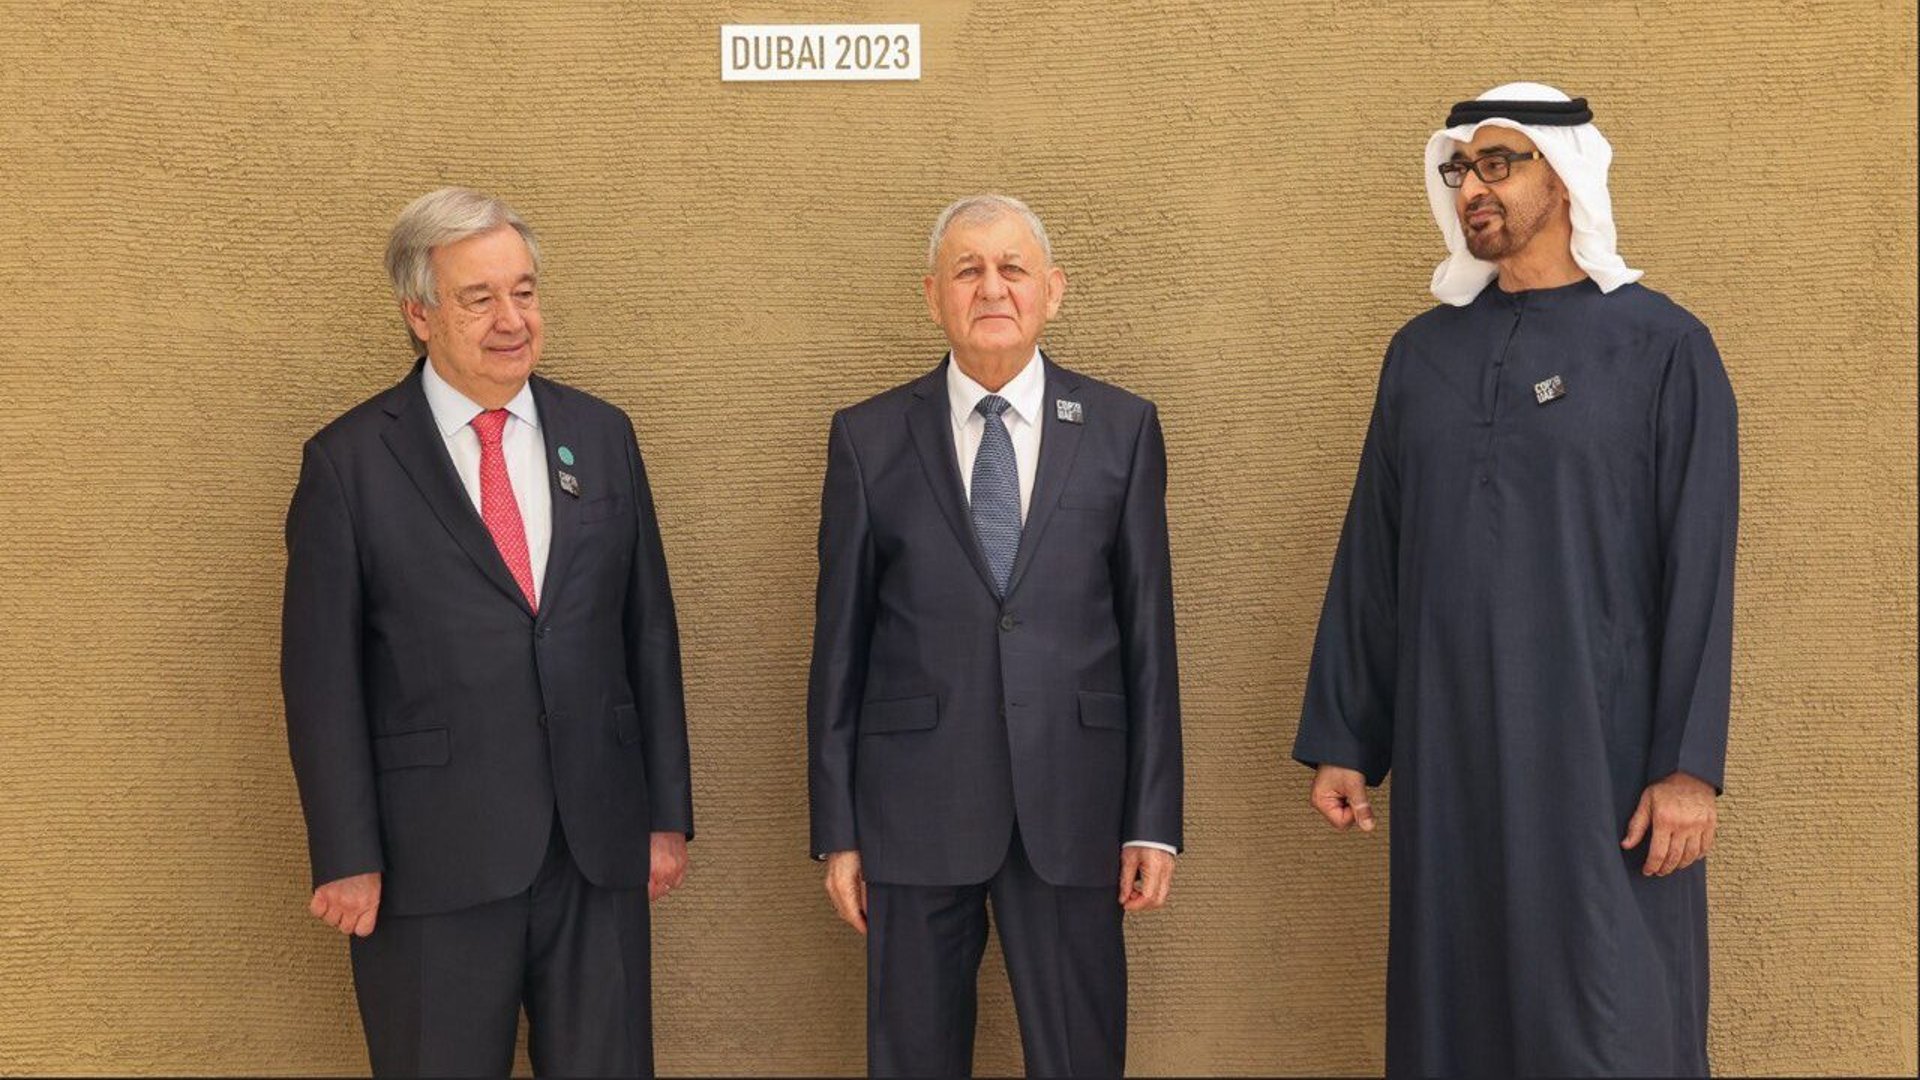 صورة: الرئيس رشيد يتوسط غوتيريش وبن زايد في إكسبو دبي